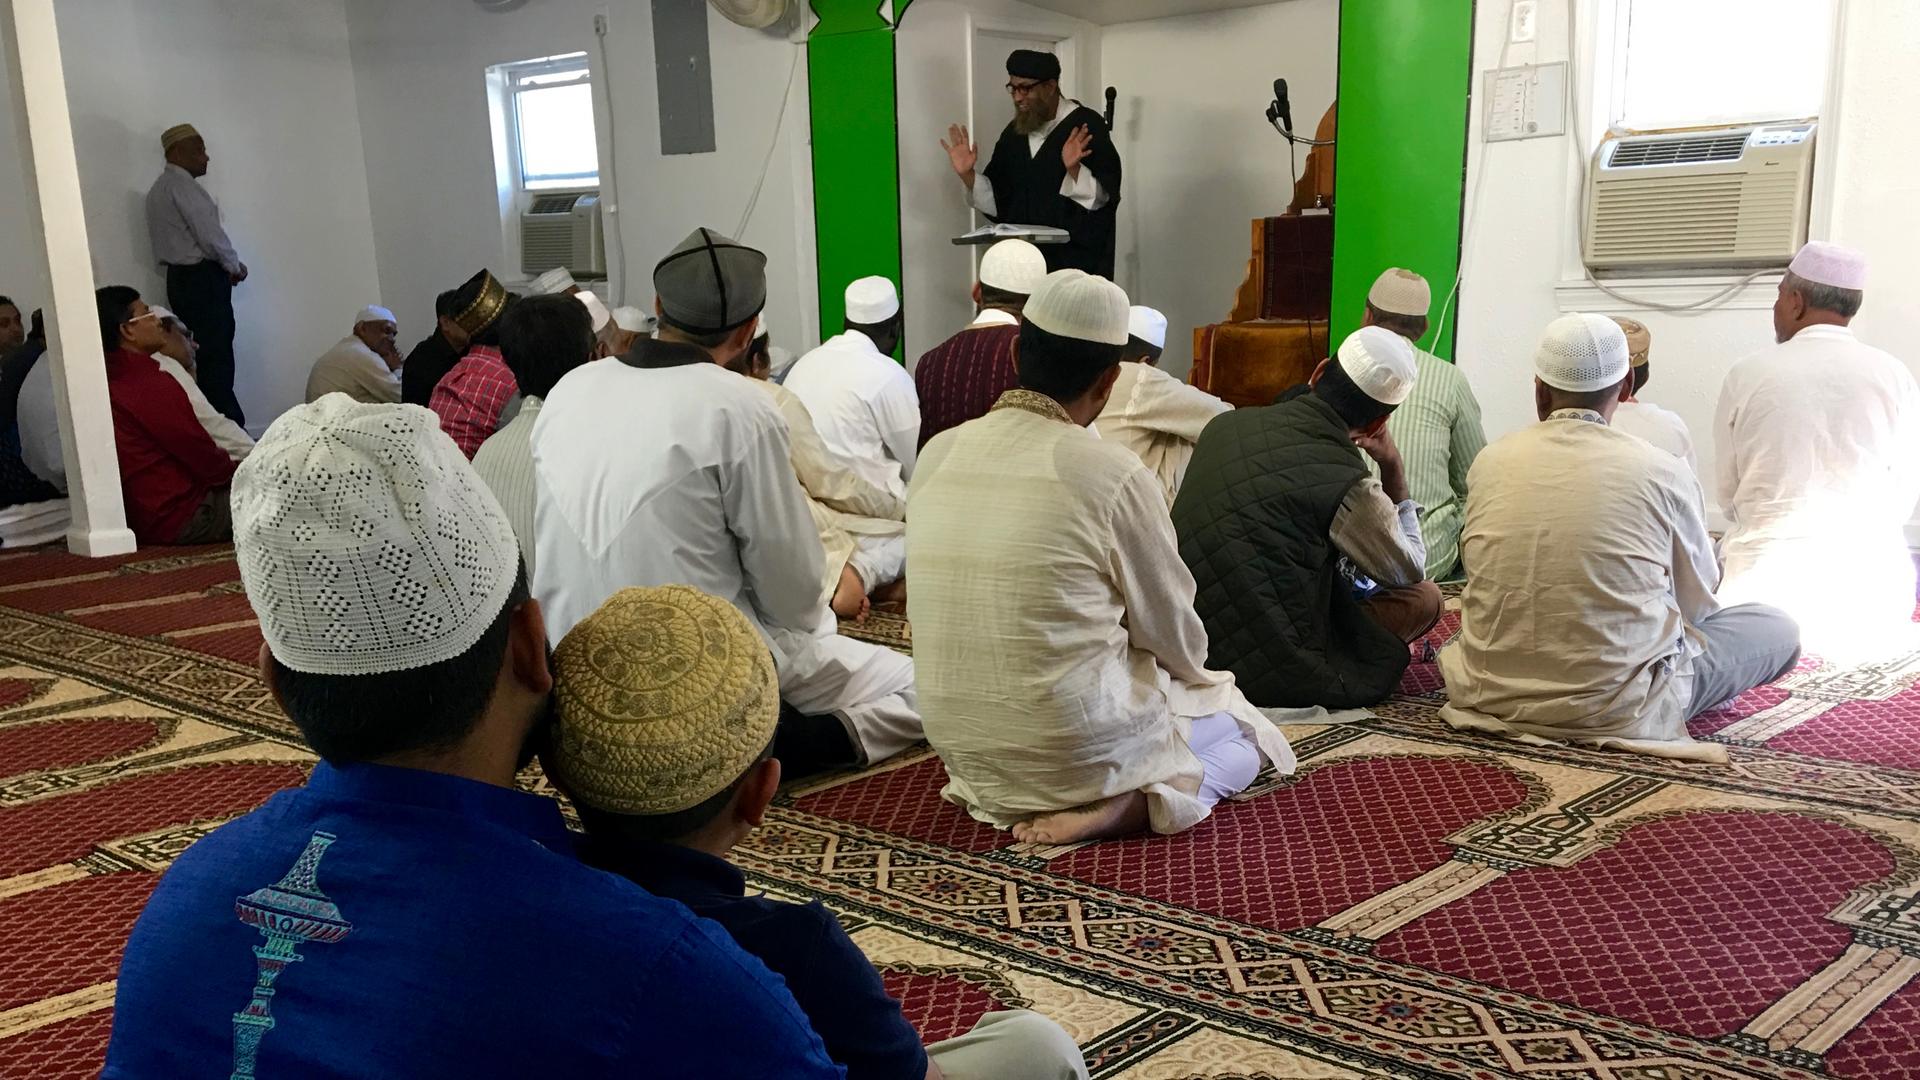 Imam Mohammad Islam leads Friday prayers at Al Ma'ad Al Islami mosque outside of Atlanta, Georgia on November 18, 2016.